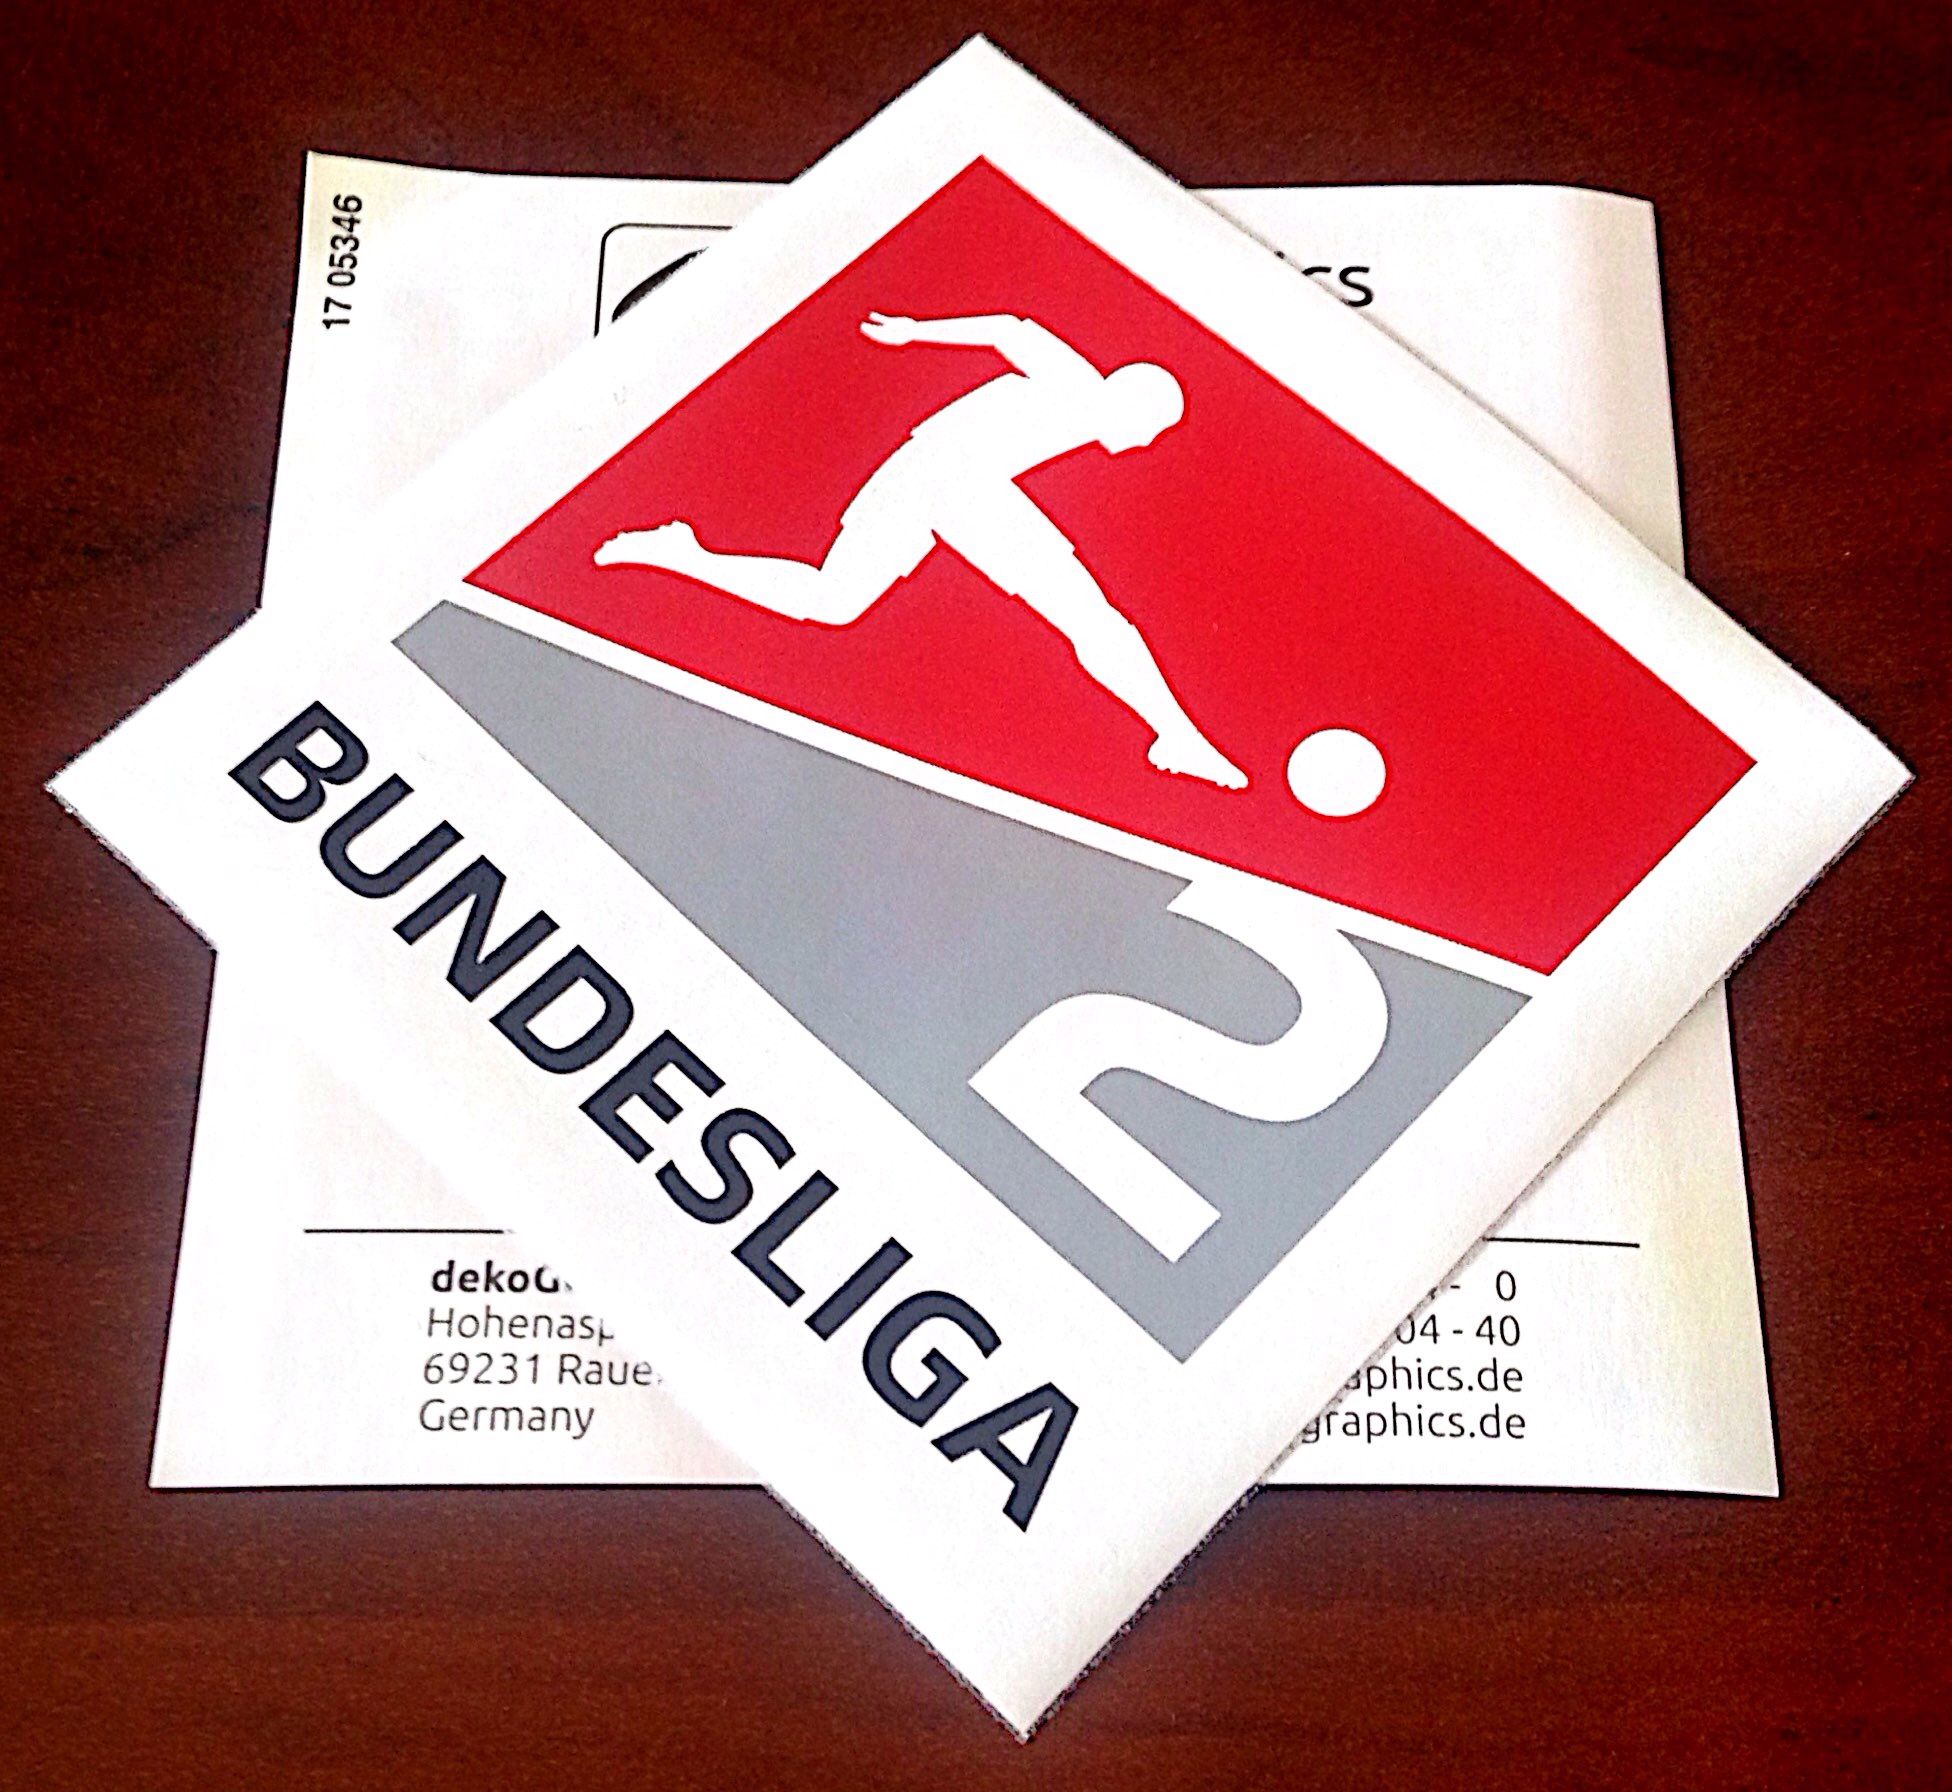 Braunschweig VS Arminia Bielefeld ( BETTING TIPS, Match Preview & Expert Analysis )™